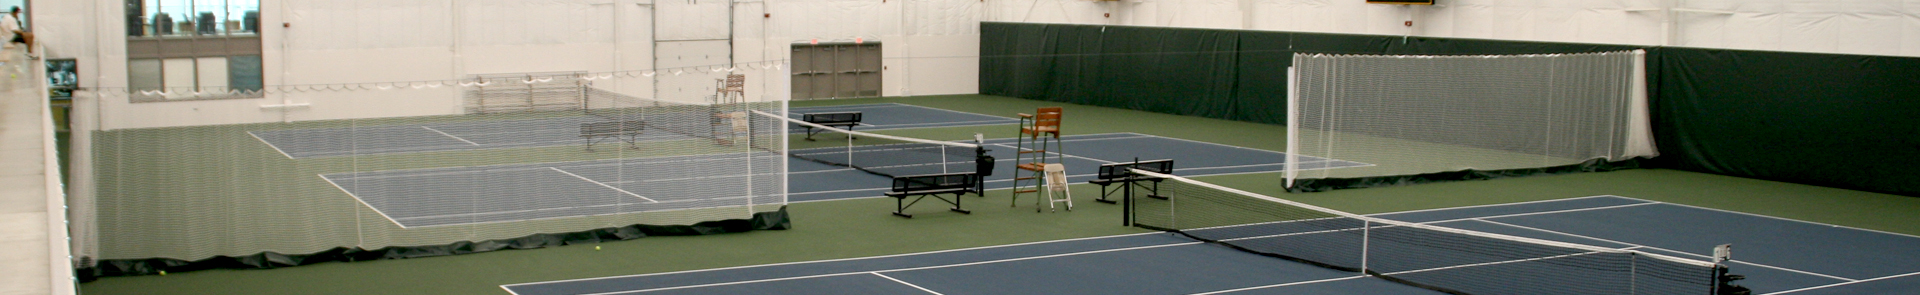 Indoor Tennis Court Divider Nets